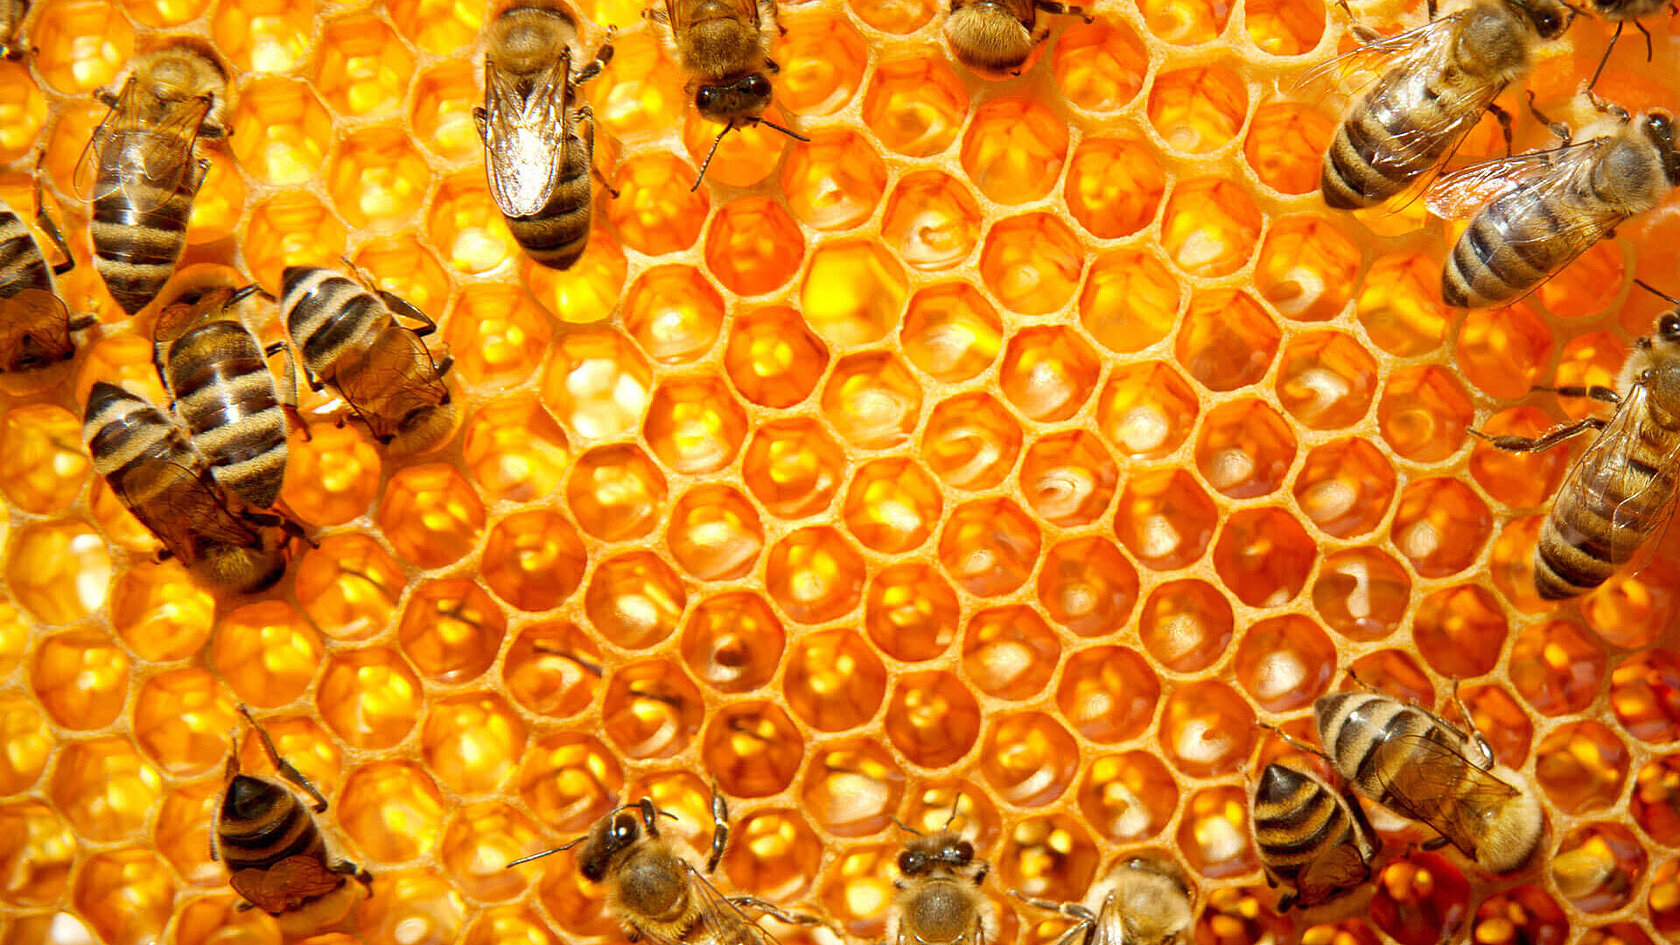 csm_elementar-biovision-honey-honeycombs_700d63d2d3.jpg